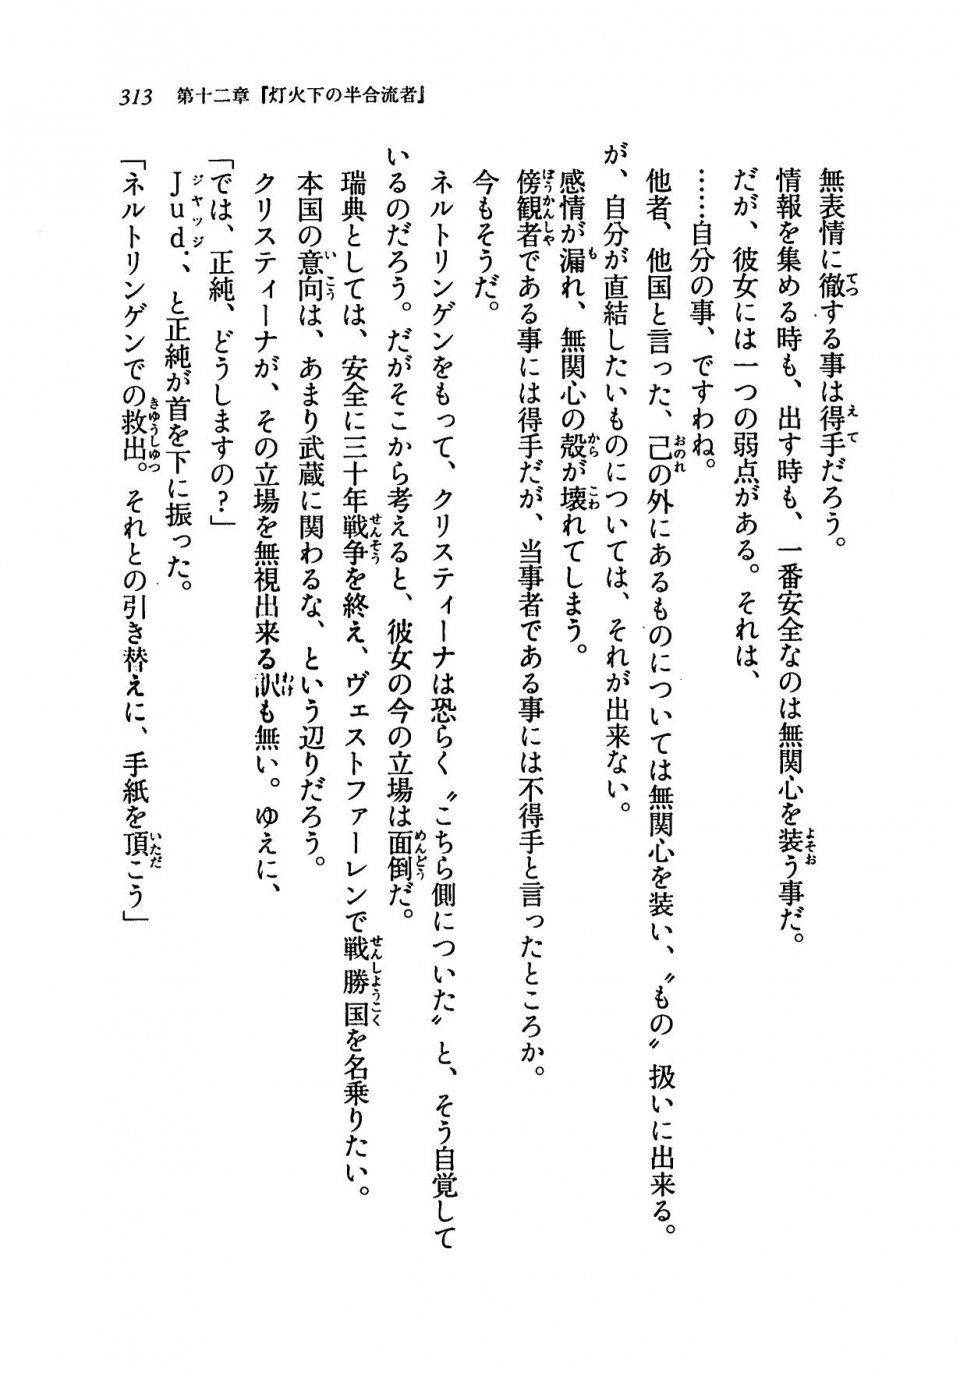 Kyoukai Senjou no Horizon LN Vol 19(8A) - Photo #313